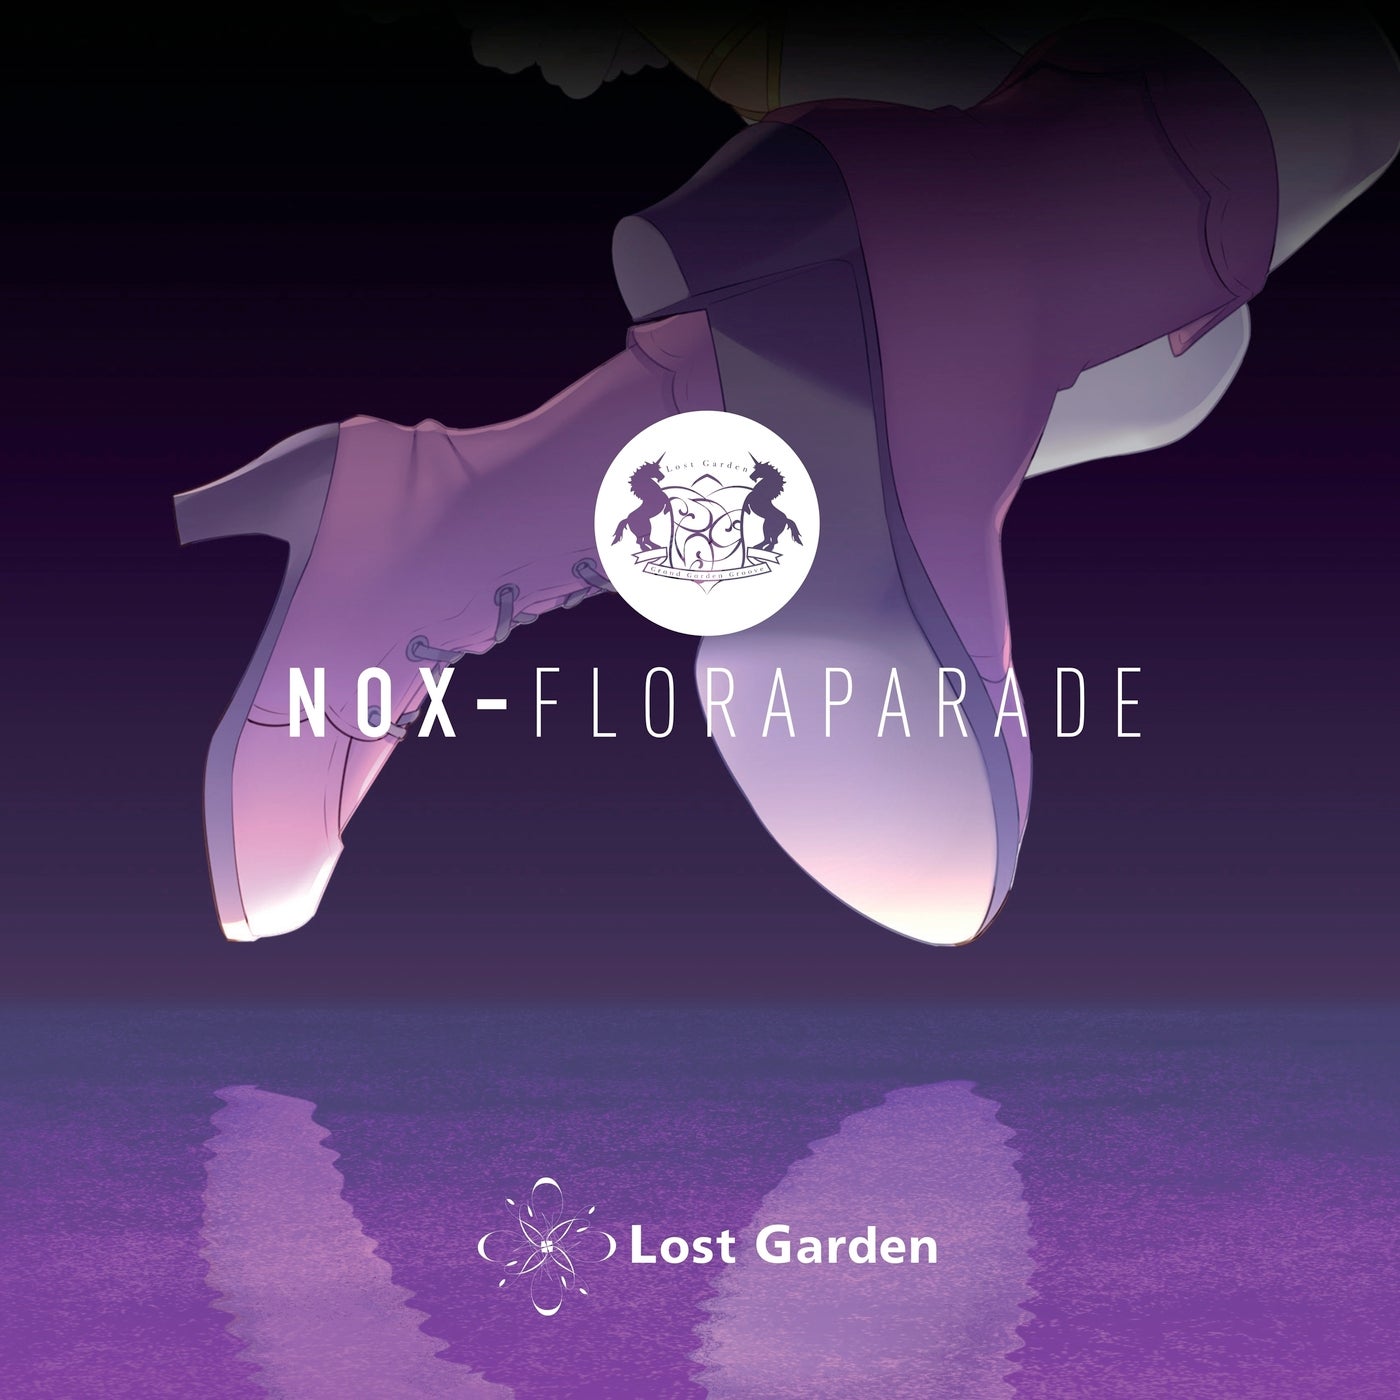 Nox - Floraparade